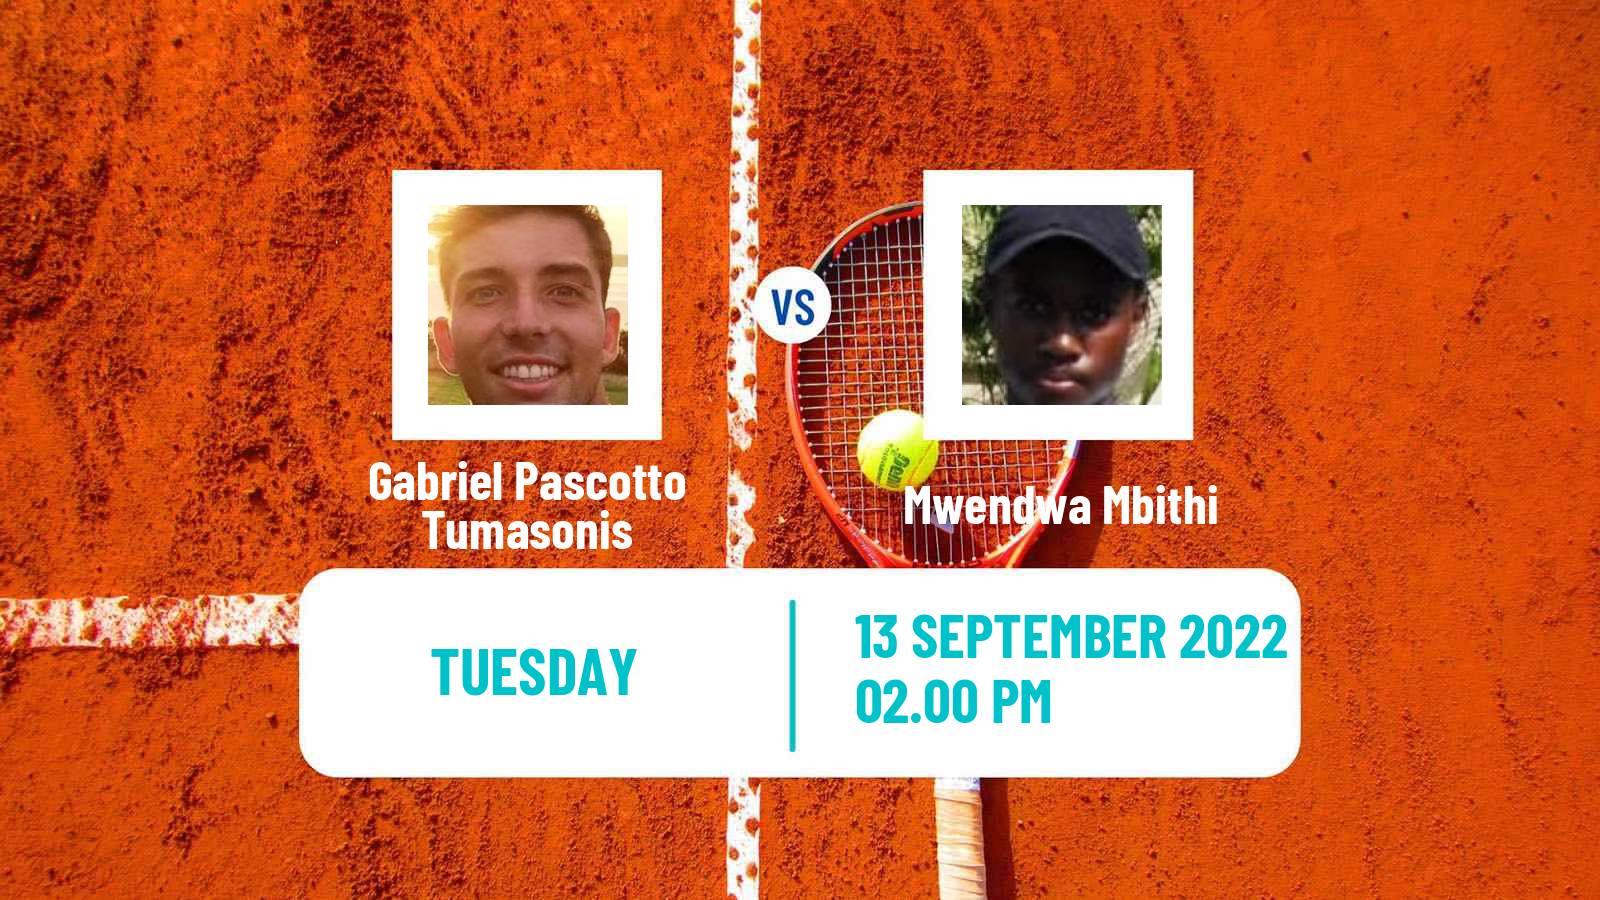 Tennis ITF Tournaments Gabriel Pascotto Tumasonis - Mwendwa Mbithi